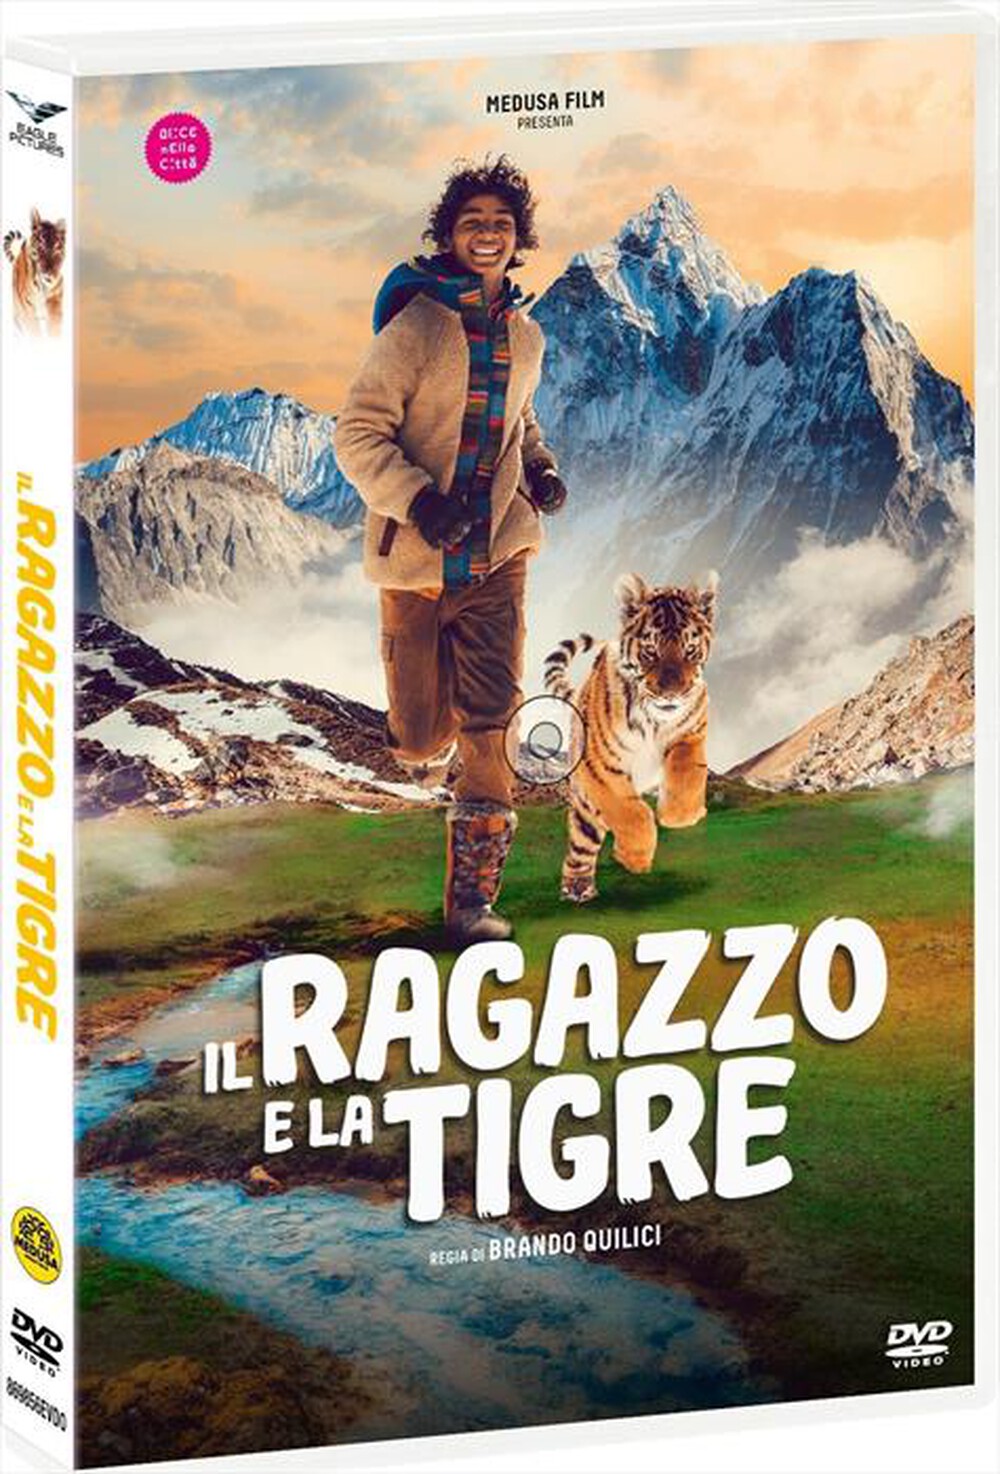 "MEDUSA VIDEO - Ragazzo E La Tigre (Il)"